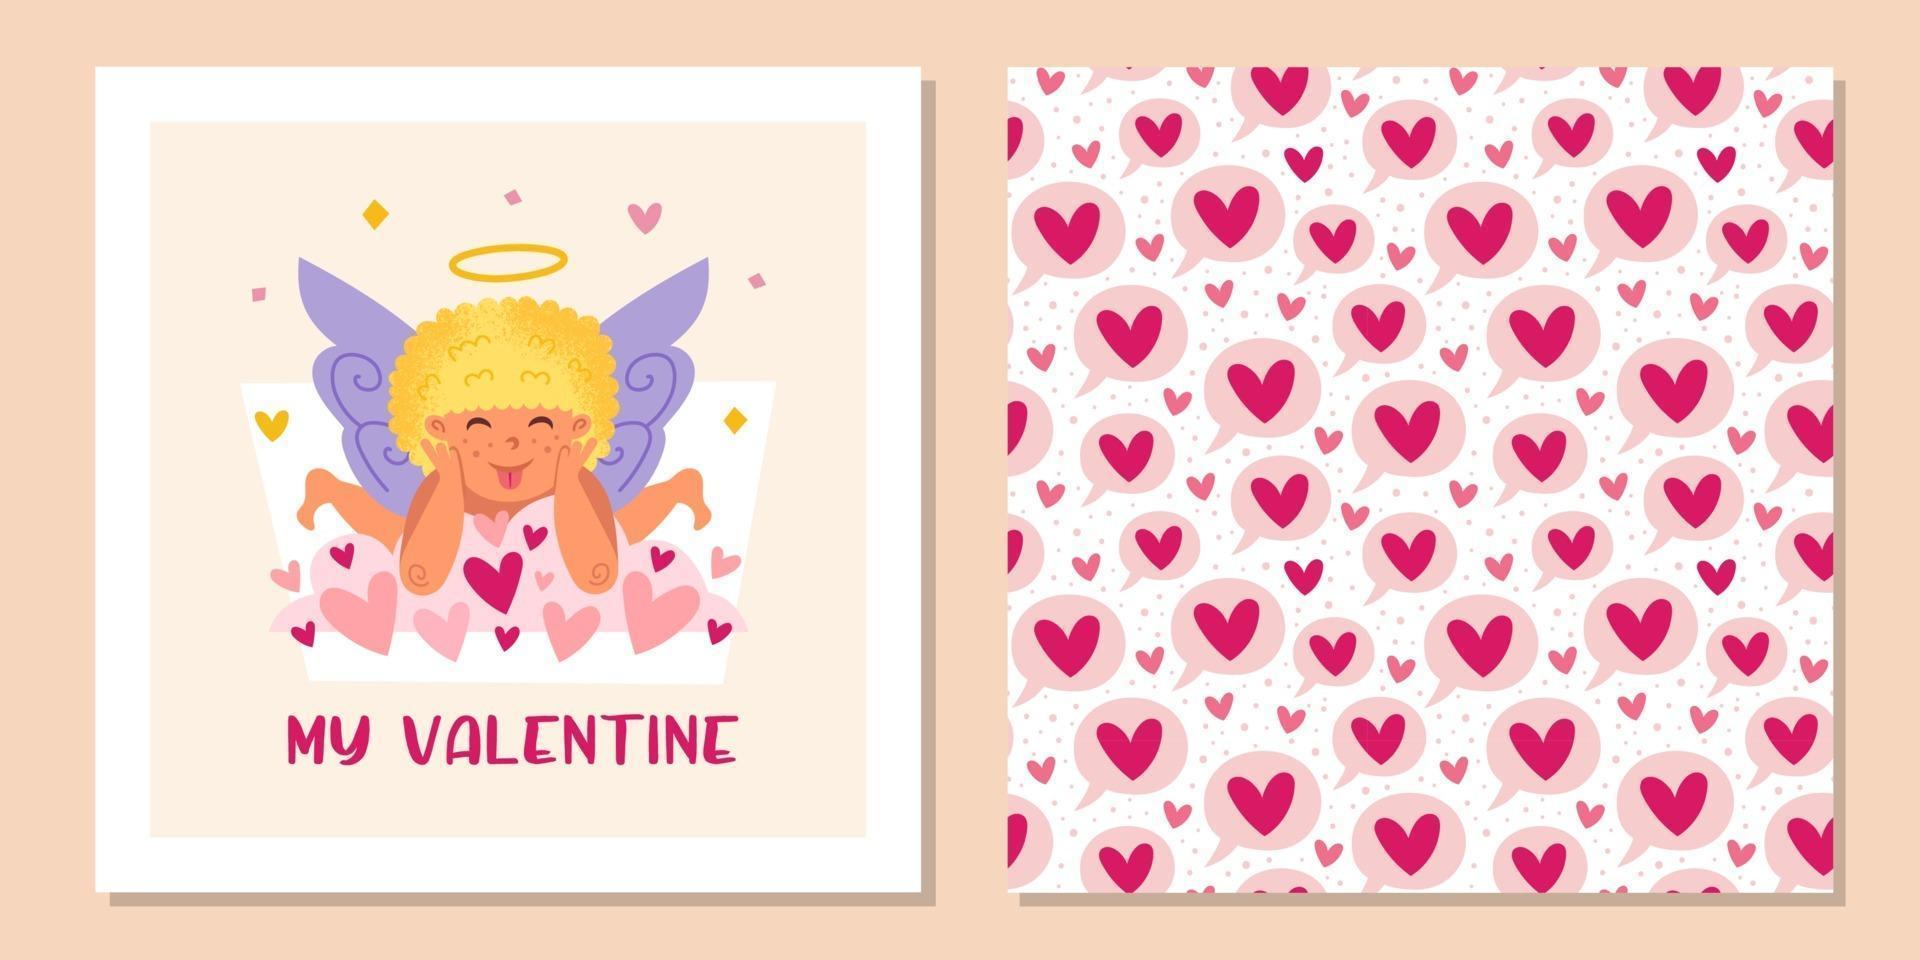 Cupido divertido con halo y corazones. ángel, querubines, niño, bebé. San Valentín de patrones sin fisuras, textura, fondo. plantilla de diseño de tarjetas de felicitación. vector